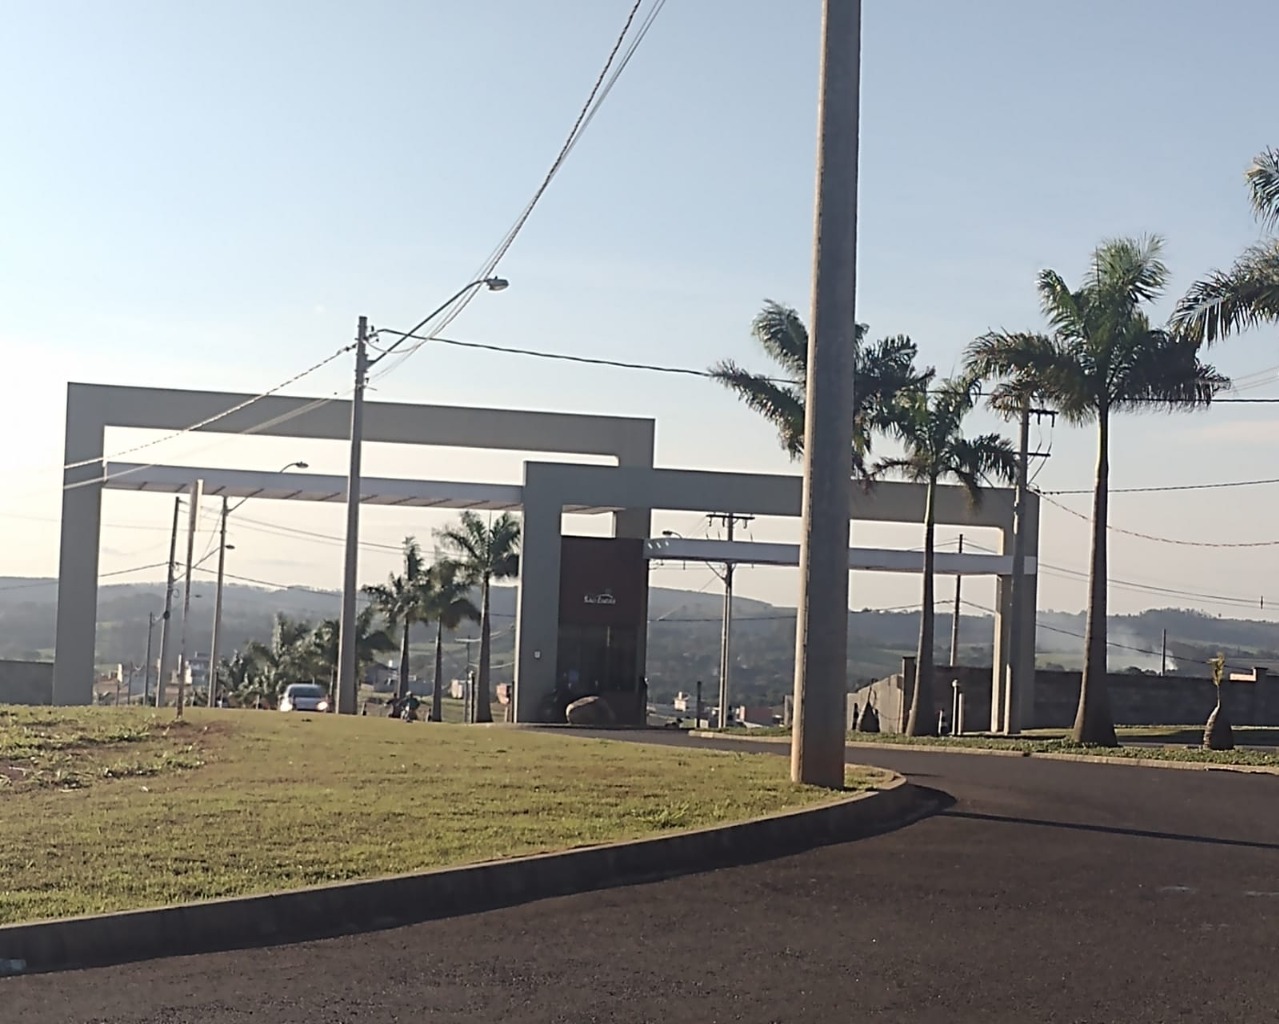 Terreno parcelado em até 120x a venda em Salto de Pirapora/SP Loteamento Jardim São Lucas